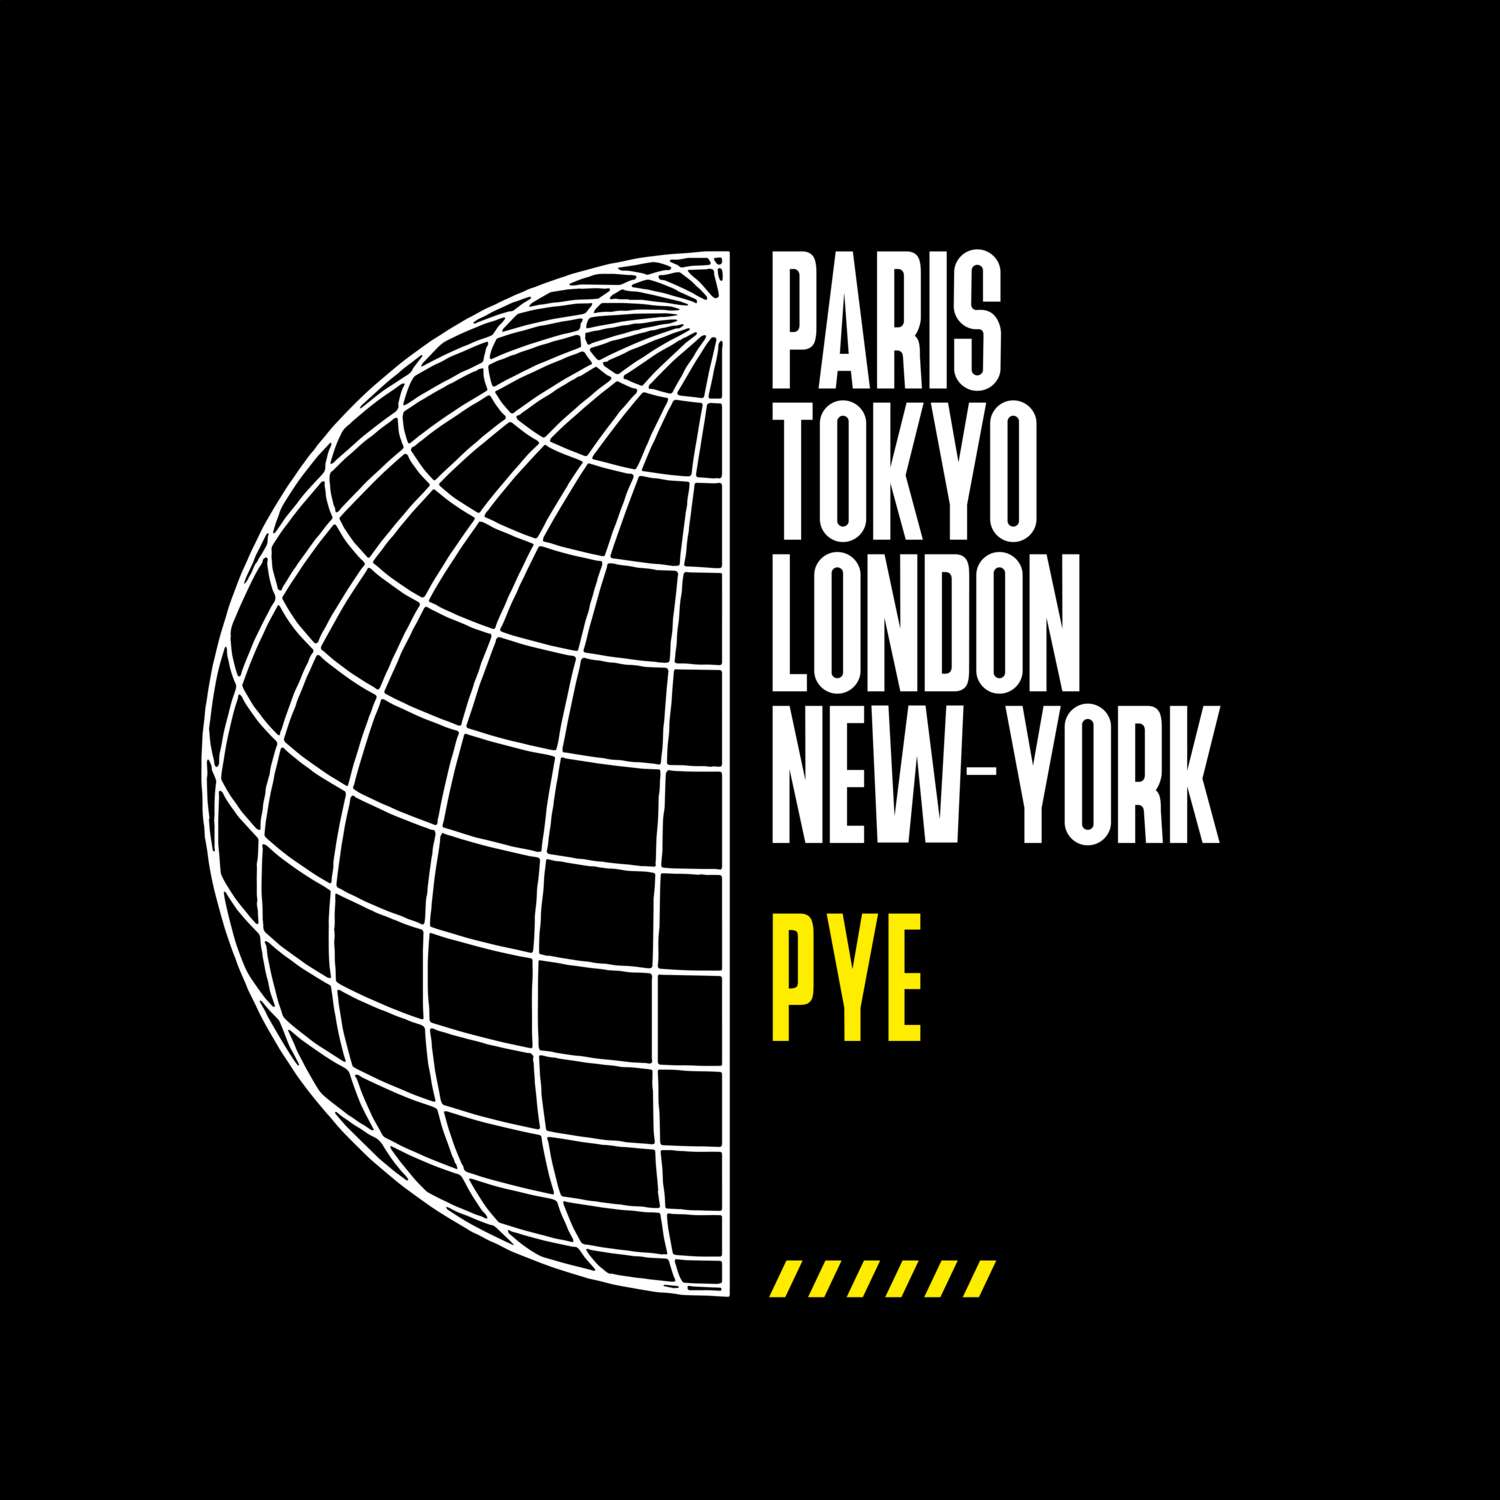 Pye T-Shirt »Paris Tokyo London«